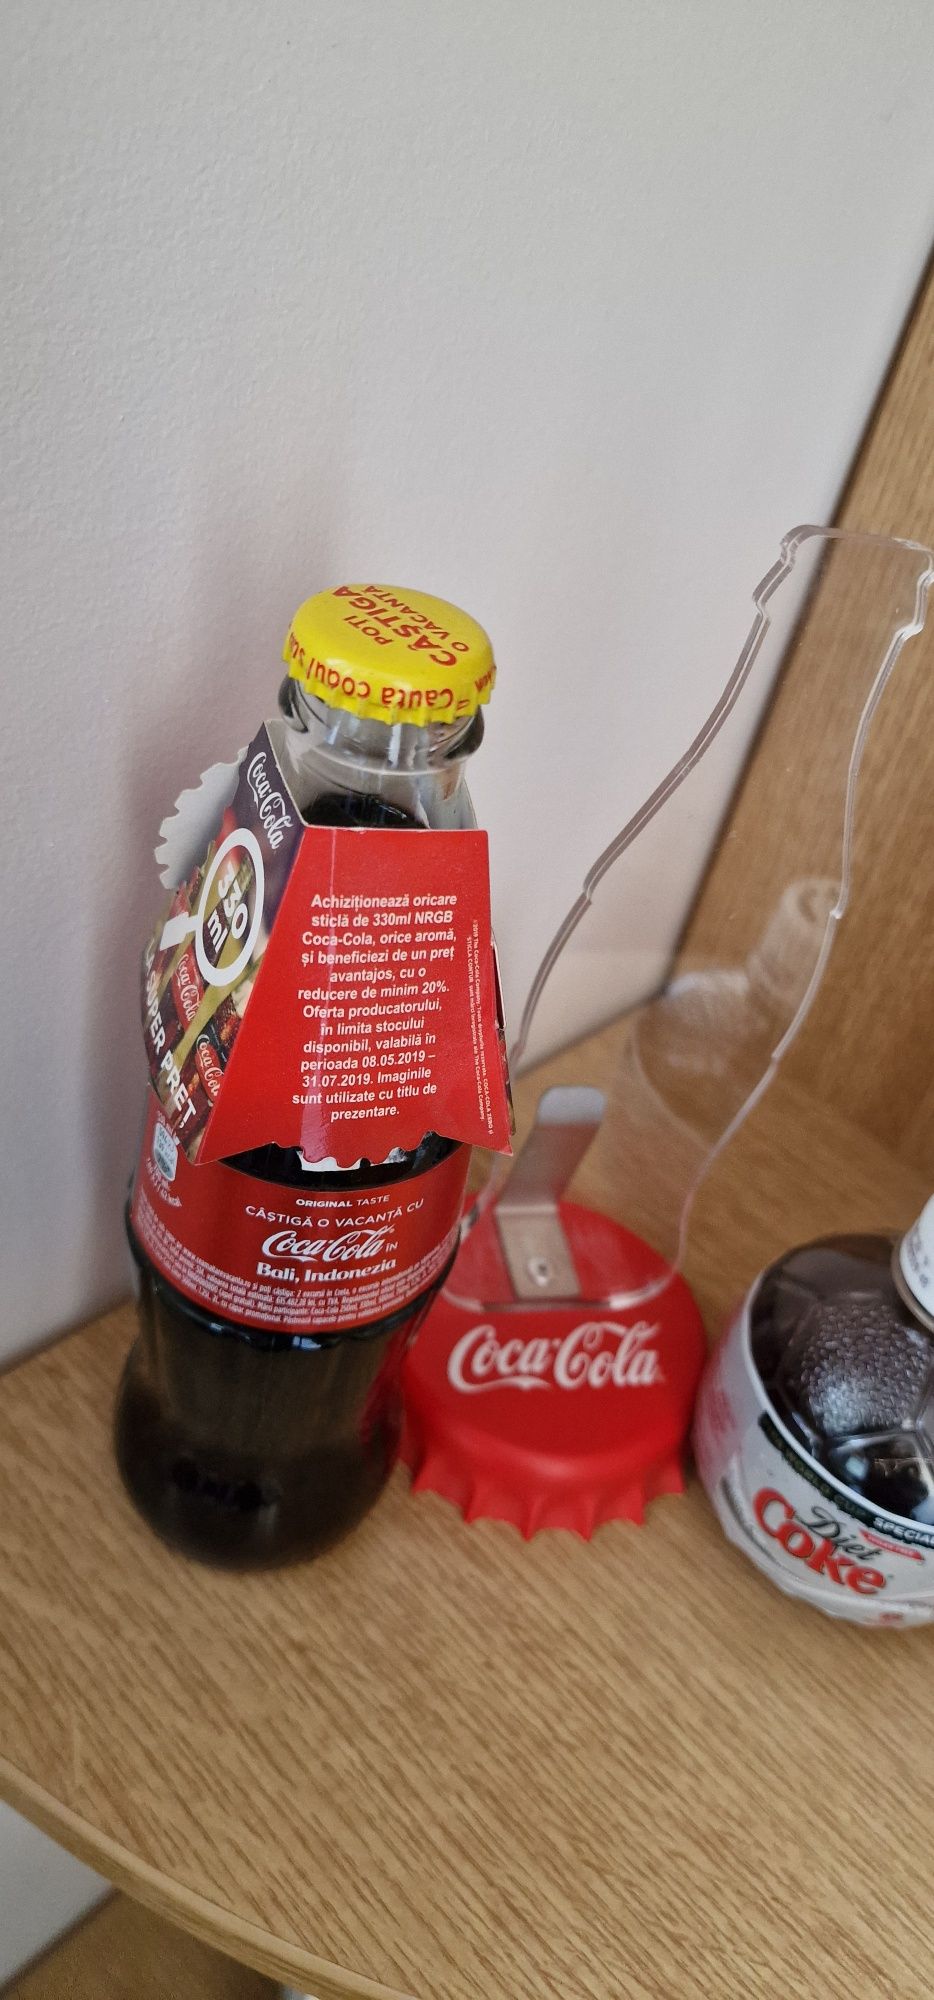 Sticle coca cola 2006-2017